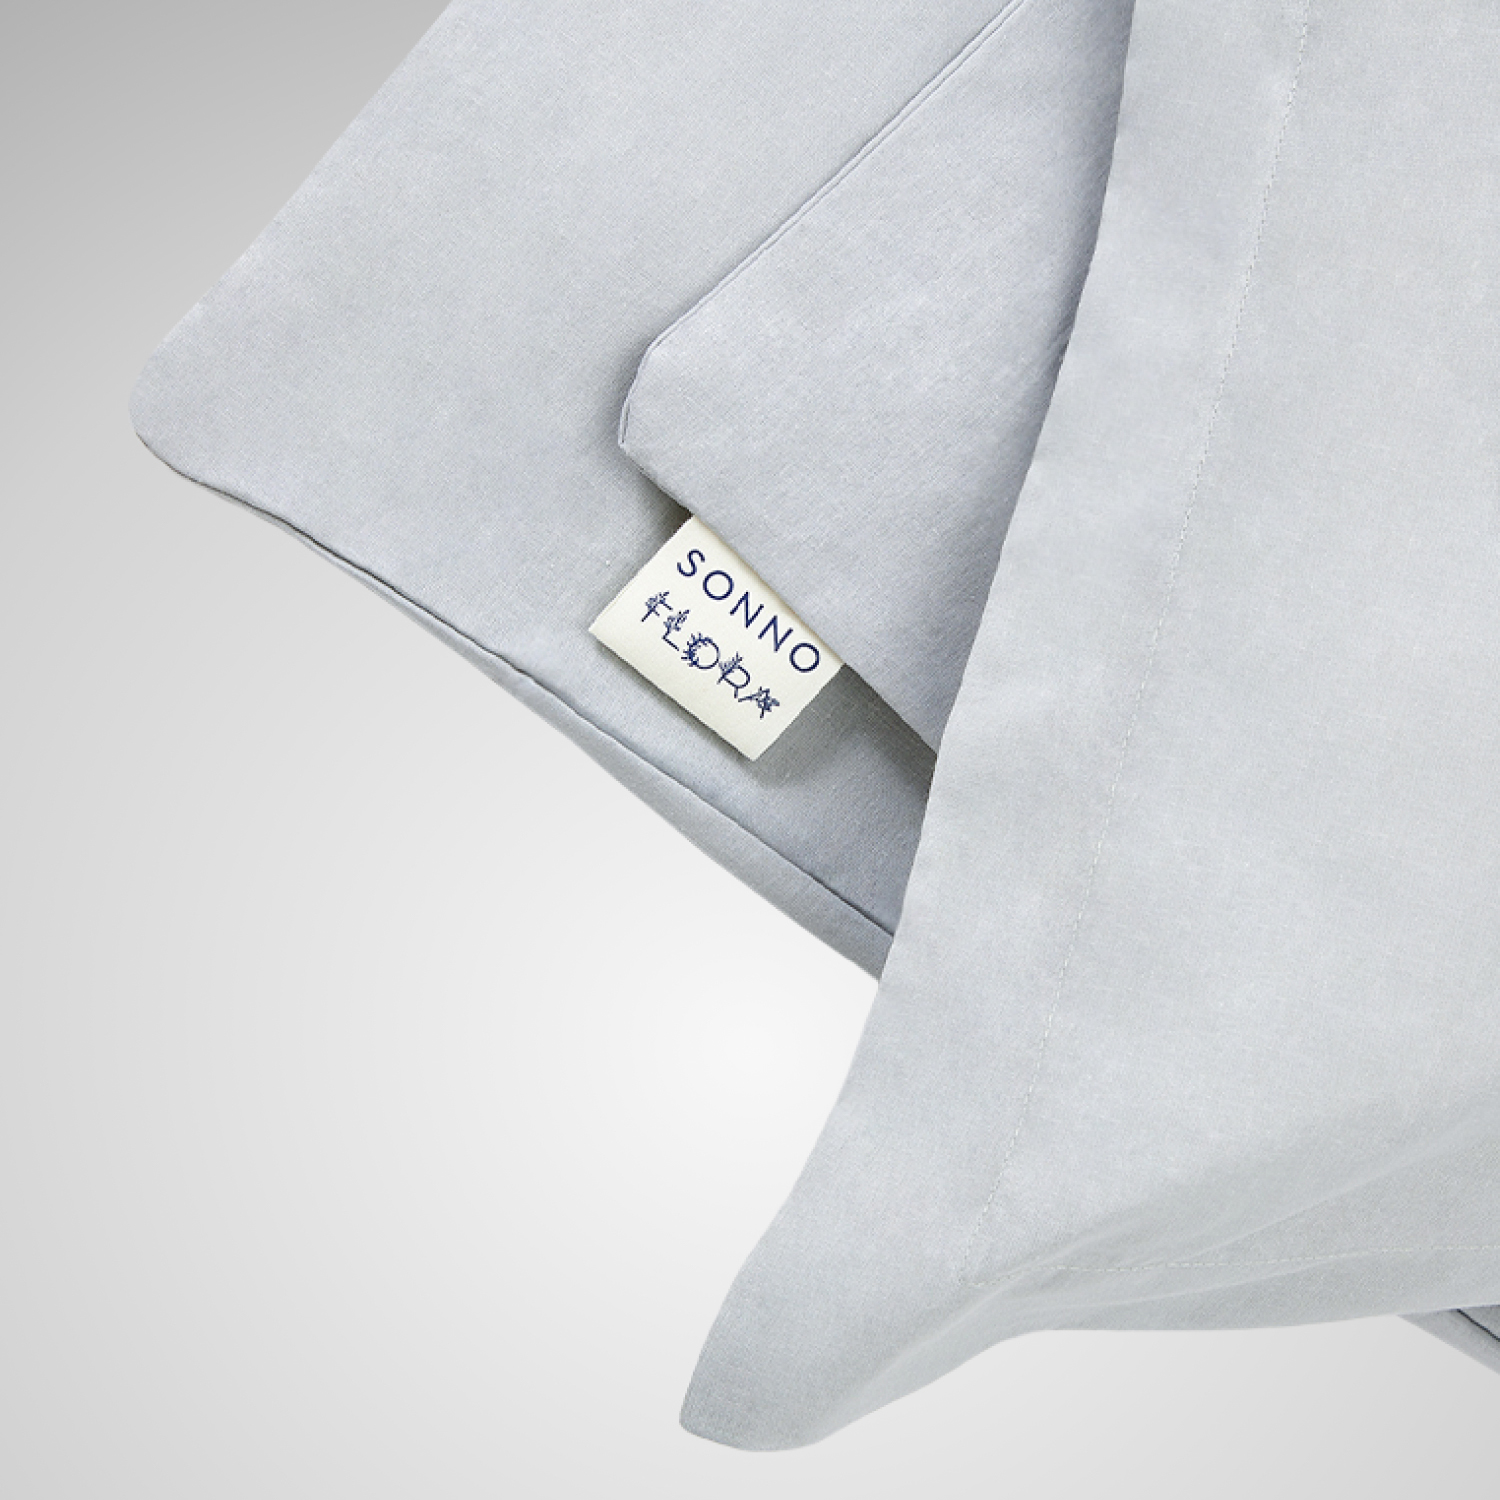 Комплект постельного белья SONNO FLORA 1.5-спальный цвет Норвежский серый - фото 3